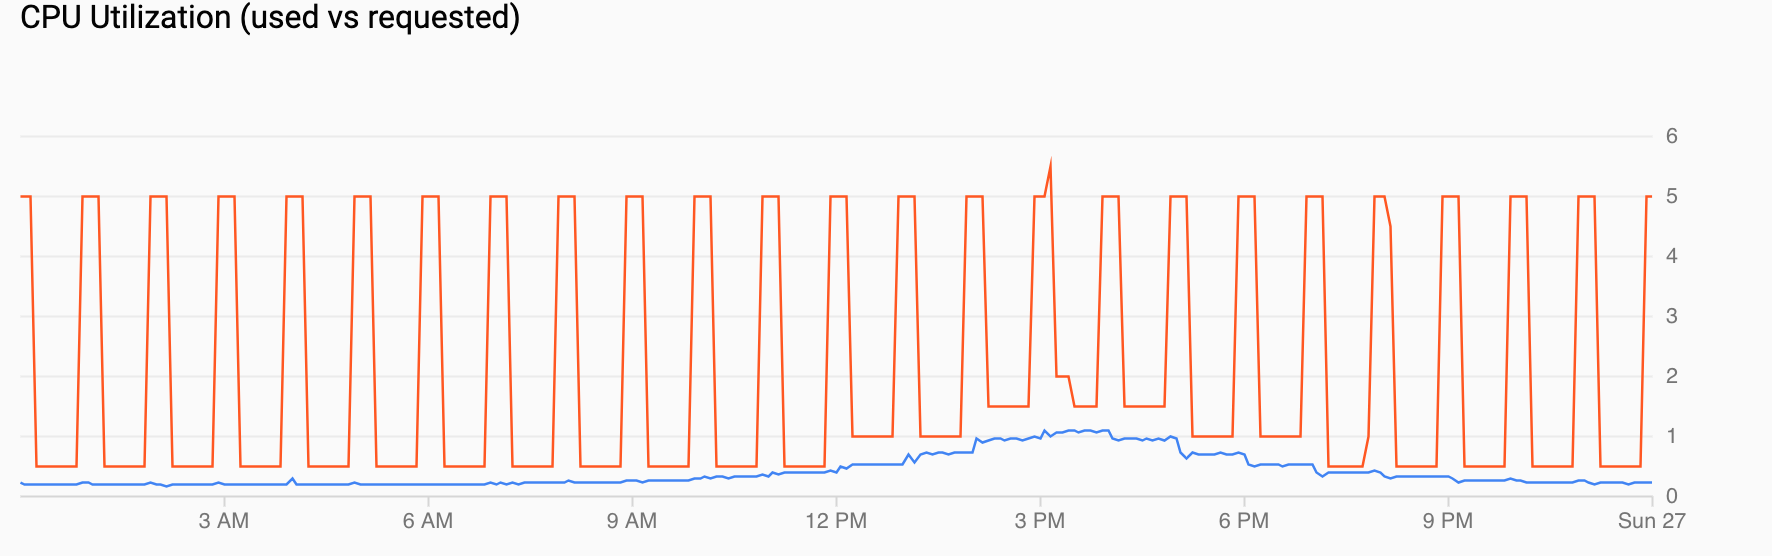 CPU 사용률의 그래프로, 일일 오후 4시까지 수요가 증가하고 그 후에는 하락함을 보여줍니다.